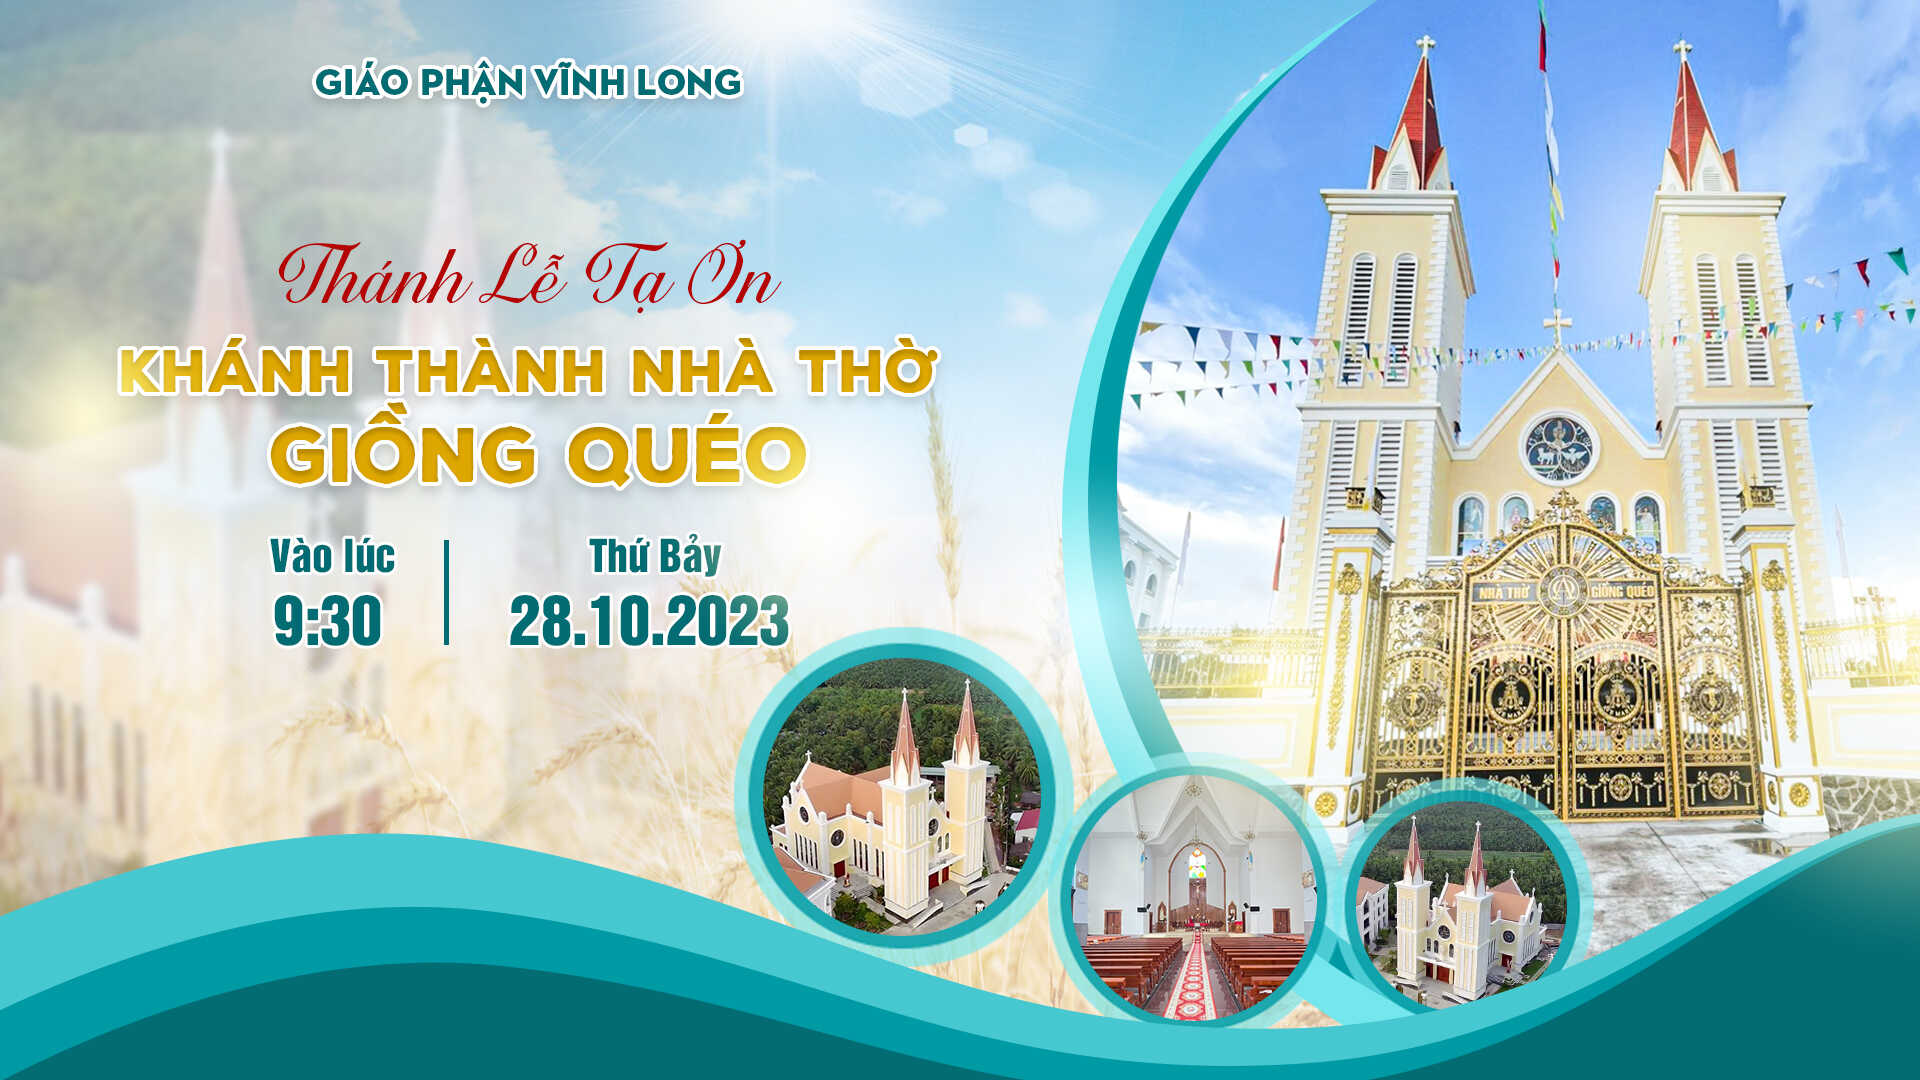 Trực tuyến: Thánh Lễ Tạ Ơn - Làm Phép Nhà Thờ Giồng Quéo  - Hạt Bình Đại -  Giáo Phận Vĩnh Long - Ngày 28.10.2023